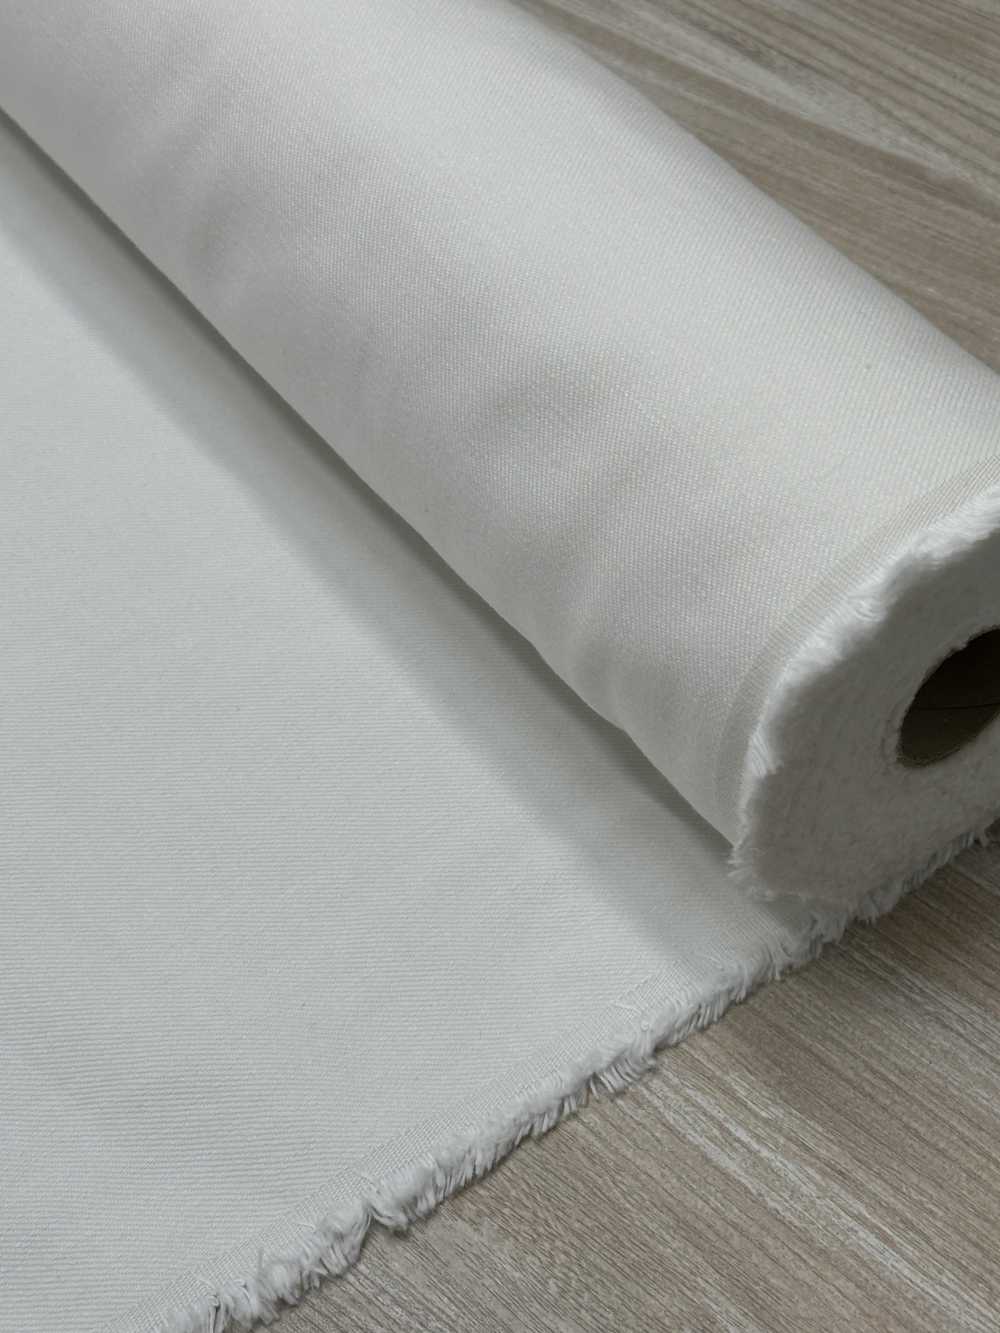 DENIM-OUTLET Denim Textile Outlet[Textile / Fabric]